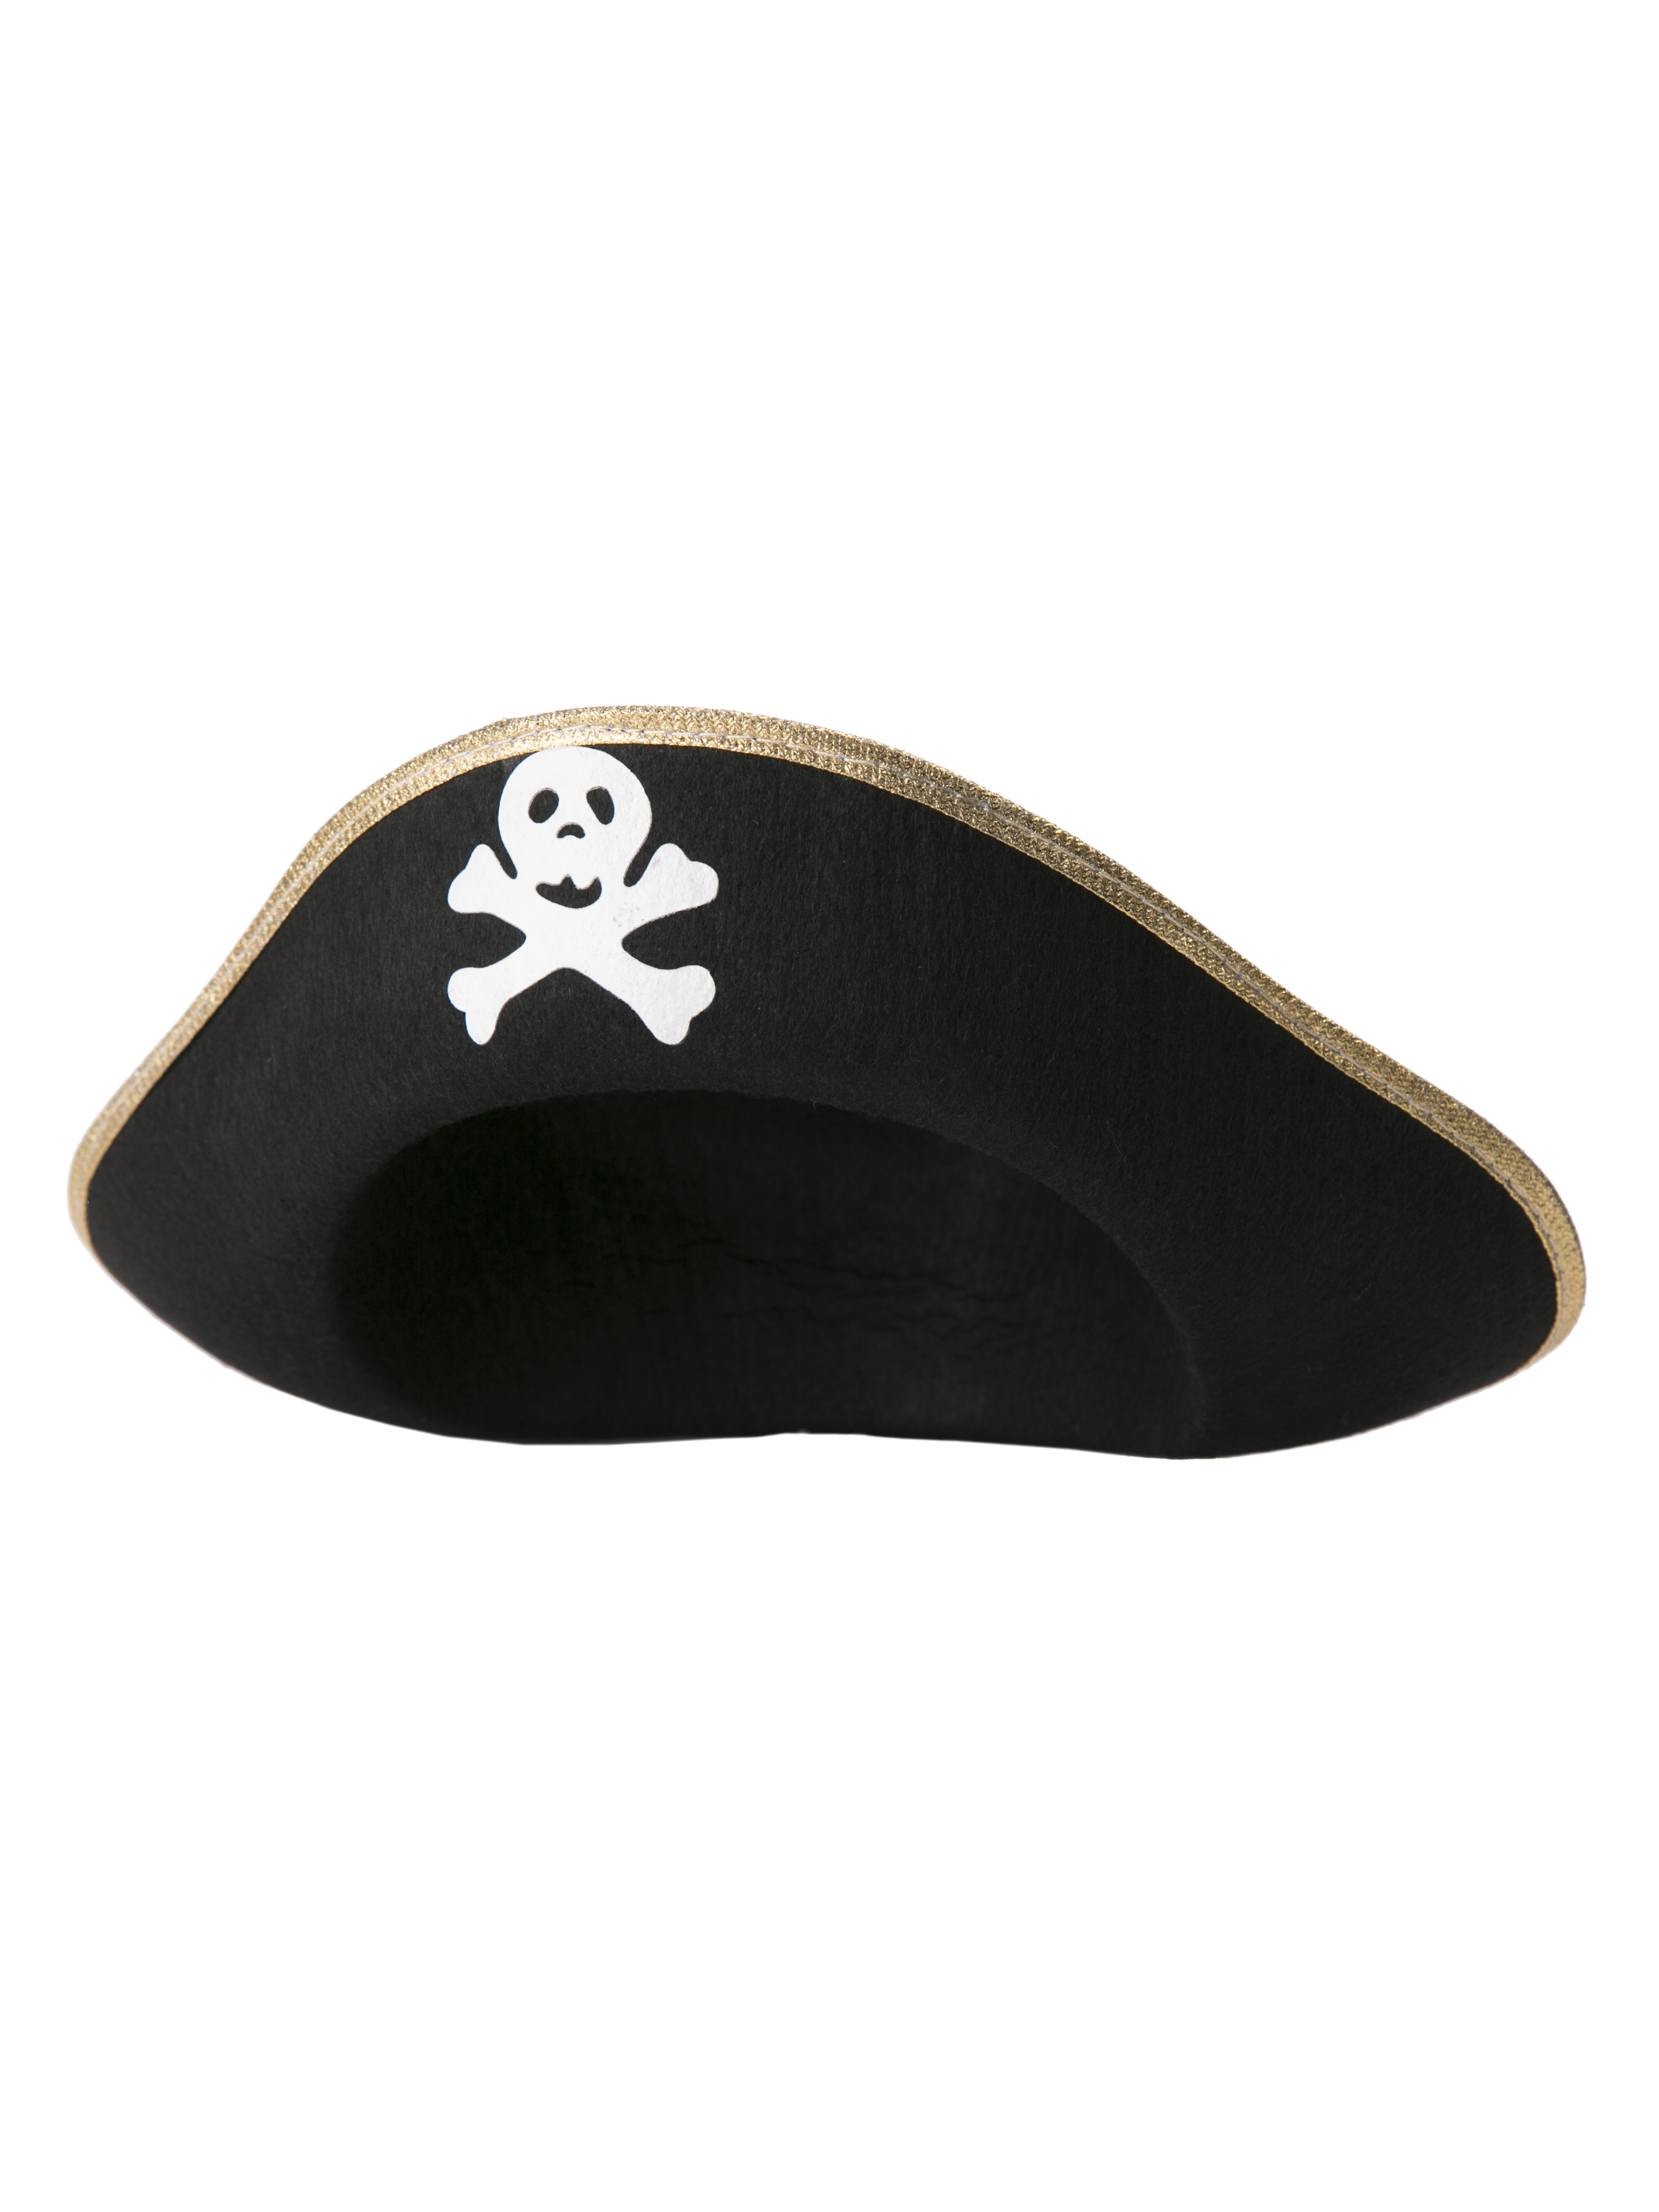 Шляпа пирата. Шляпа пирата веселый Роджер. Головной убор "Пиратская треуголка". Пиратские шляпы Wildberries. Шляпа пирата, треуголка.